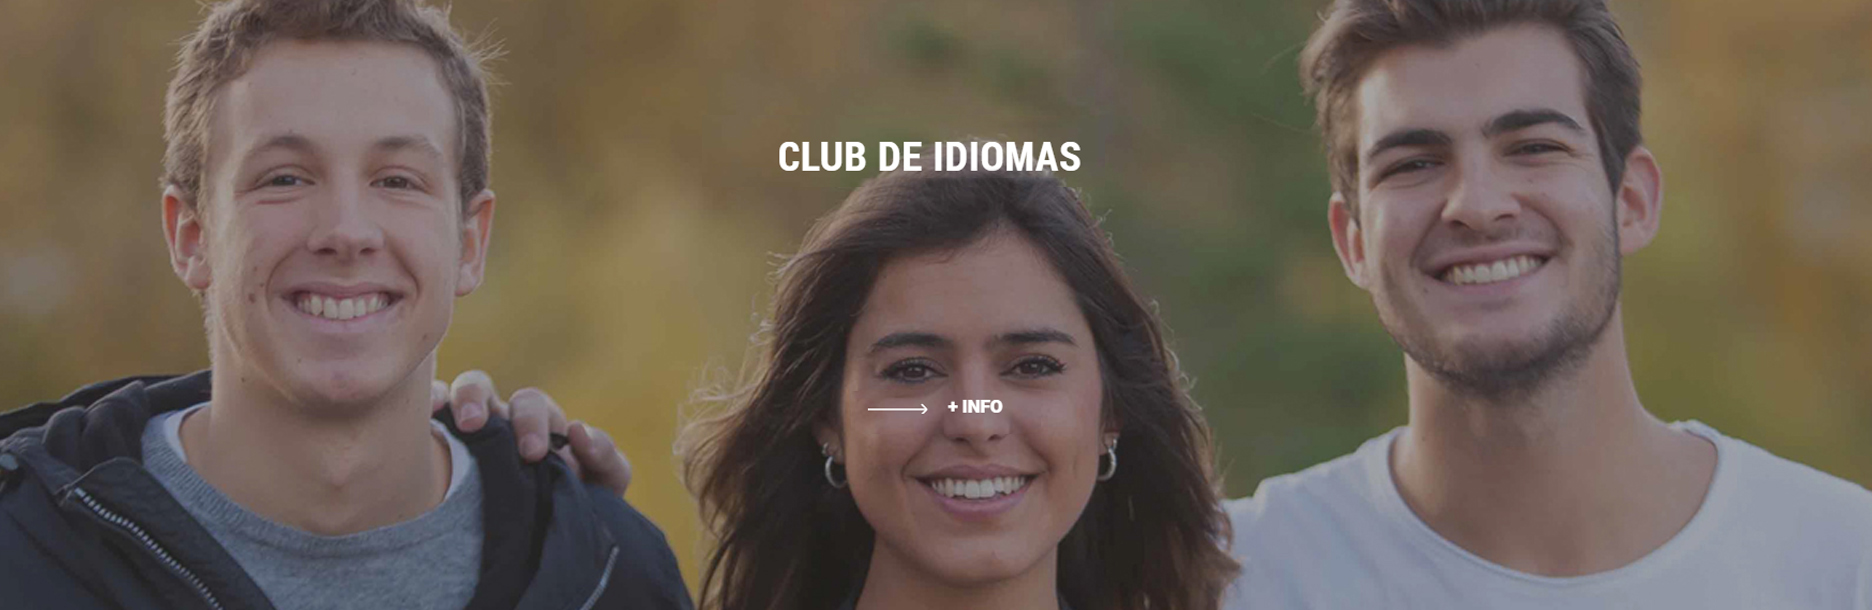 Club de Idiomas